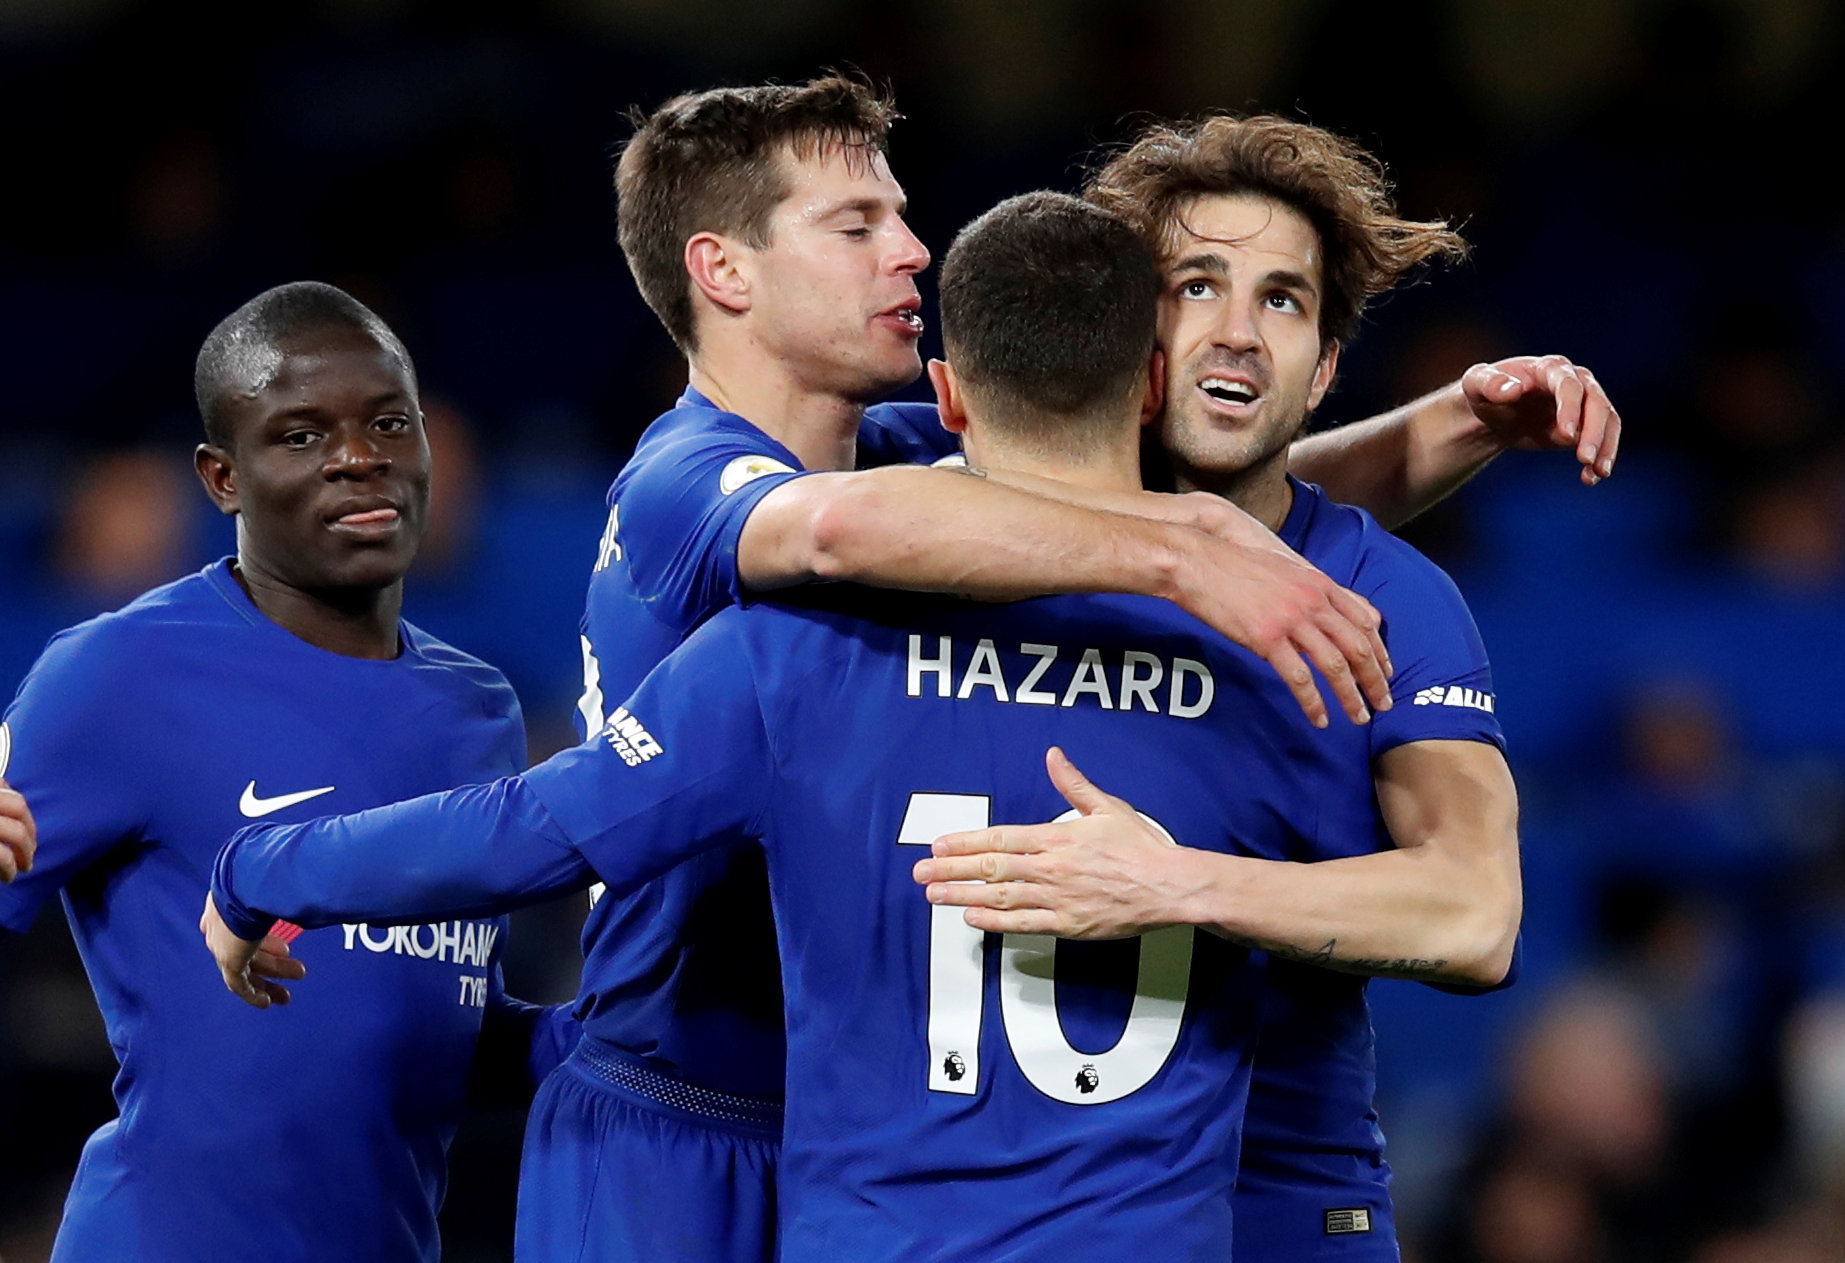 Niềm vui của các cầu thủ Chelsea sau khi Hazard nâng tỉ số lên 3-0. Ảnh: REUTERS